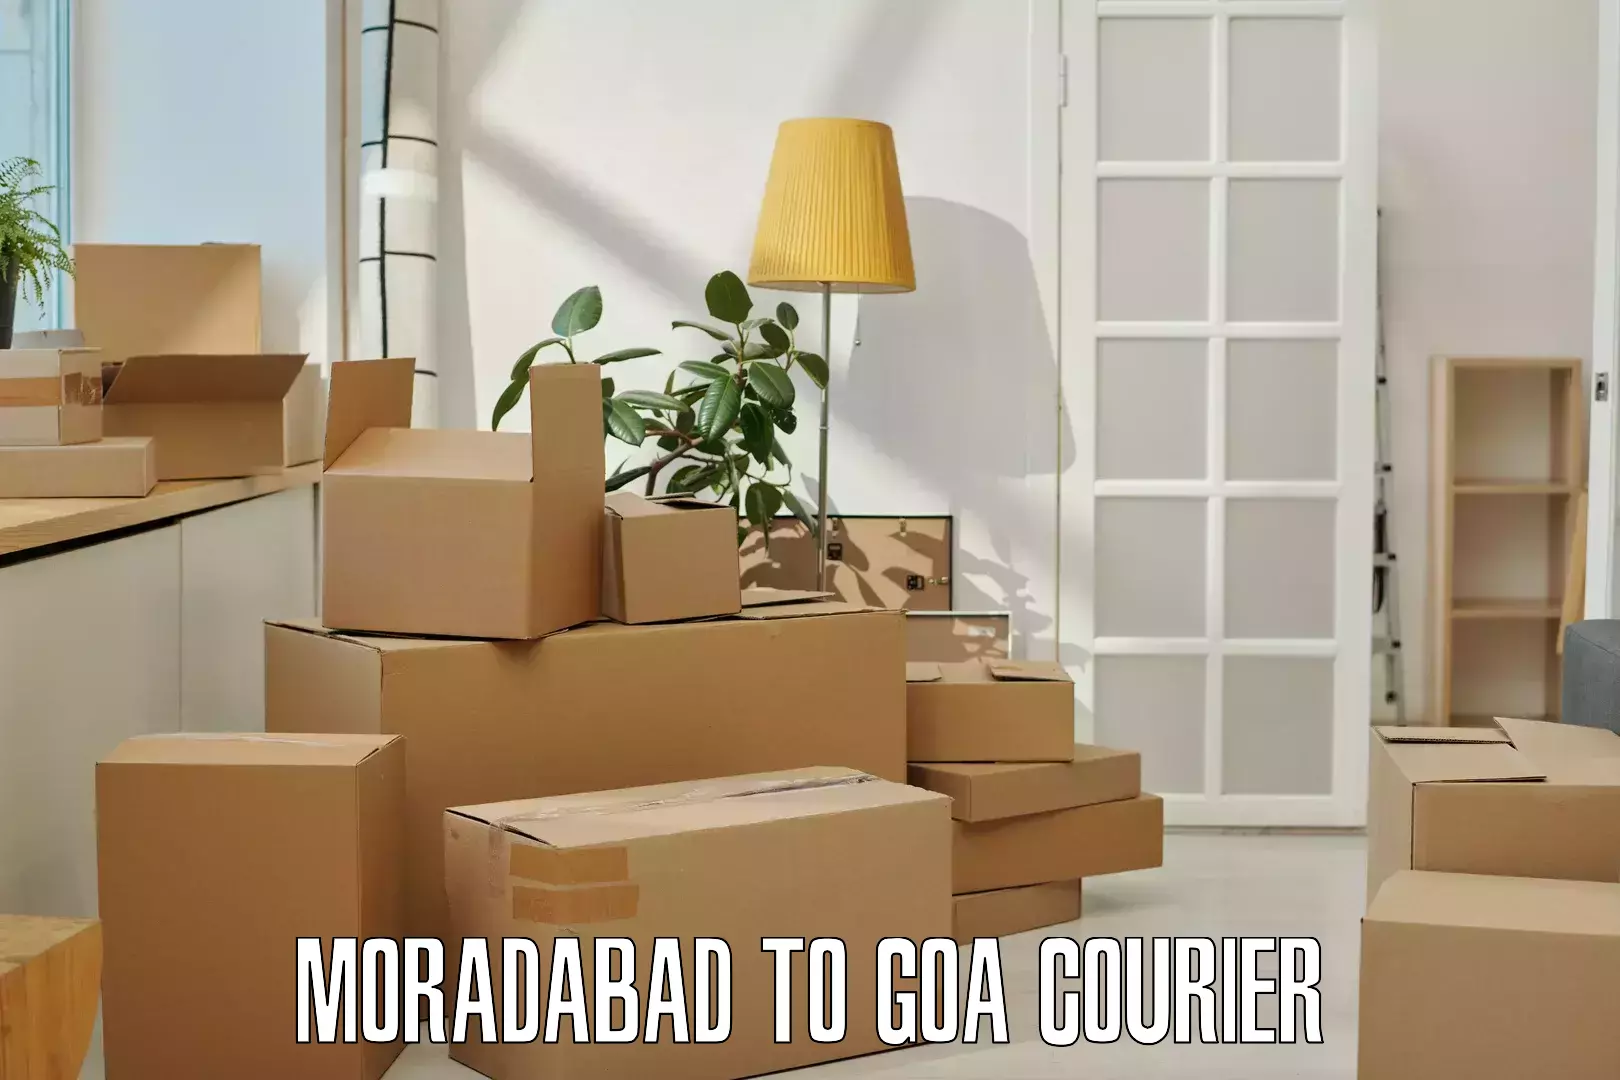 24-hour courier service Moradabad to Vasco da Gama